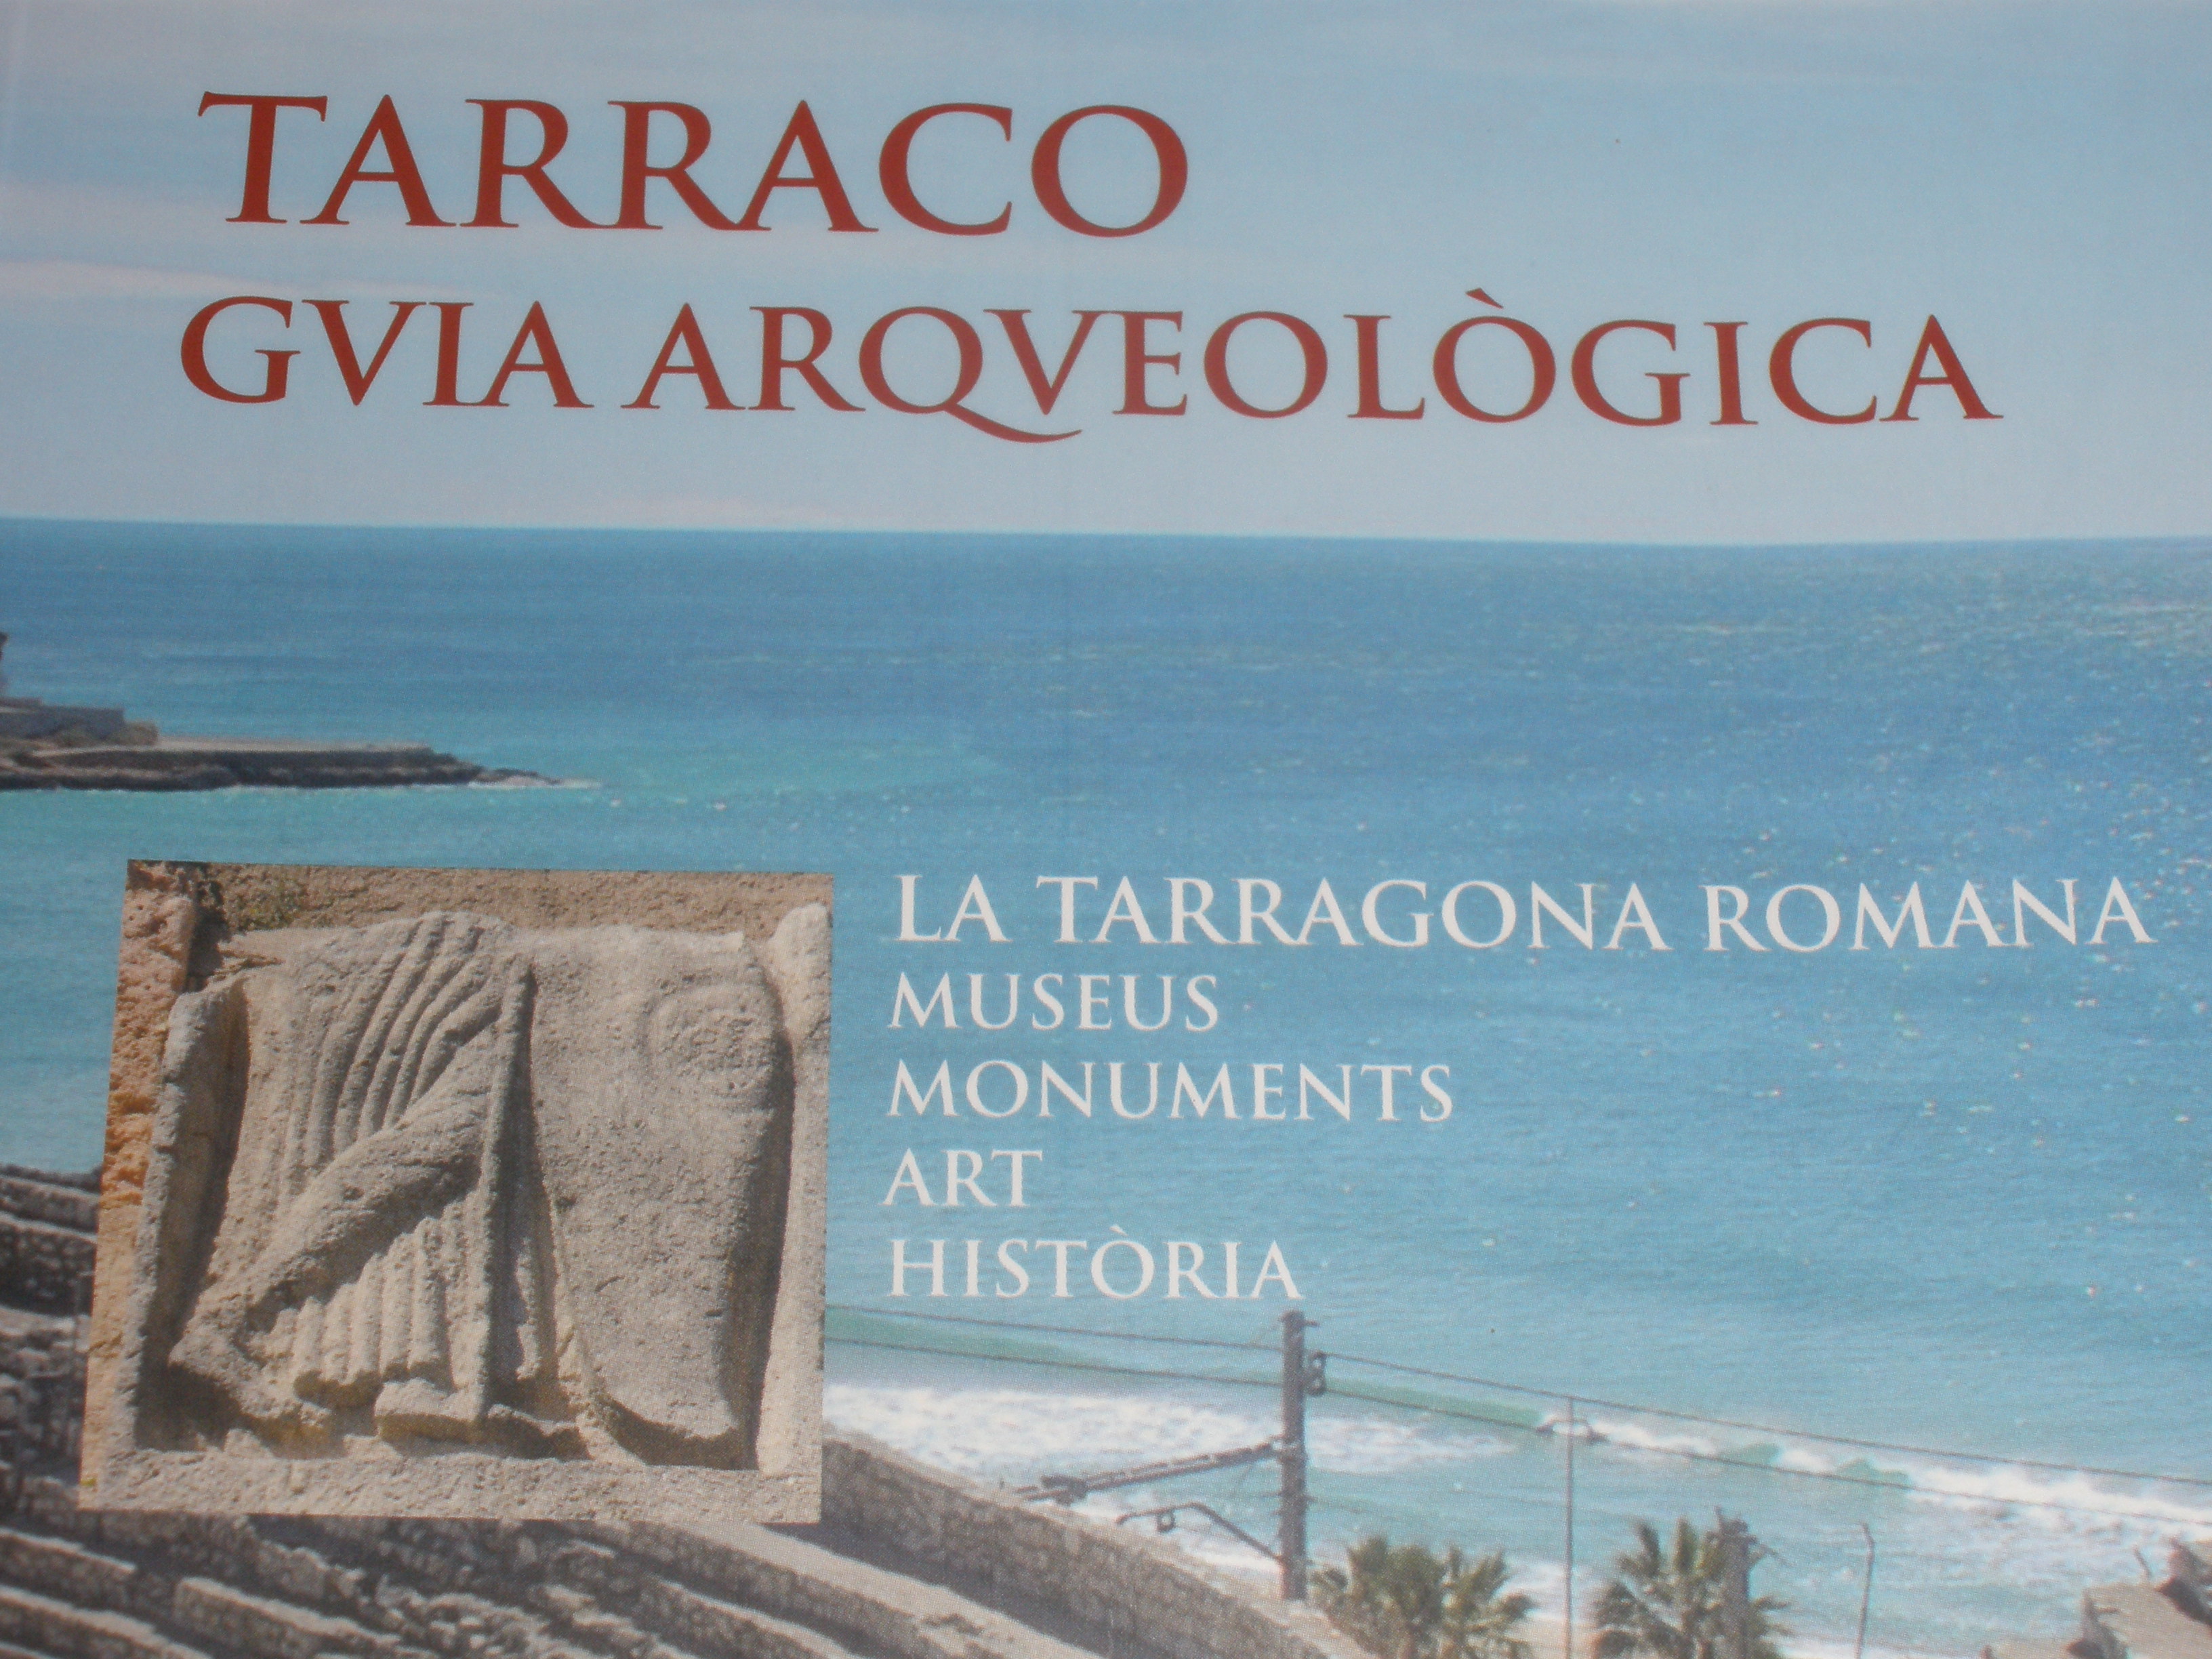 Portada de Tarraco, guia arqueològica, obra de la Reial Societat Arqueològica Tarraconense i la Fundació Privada Mútua Catalana